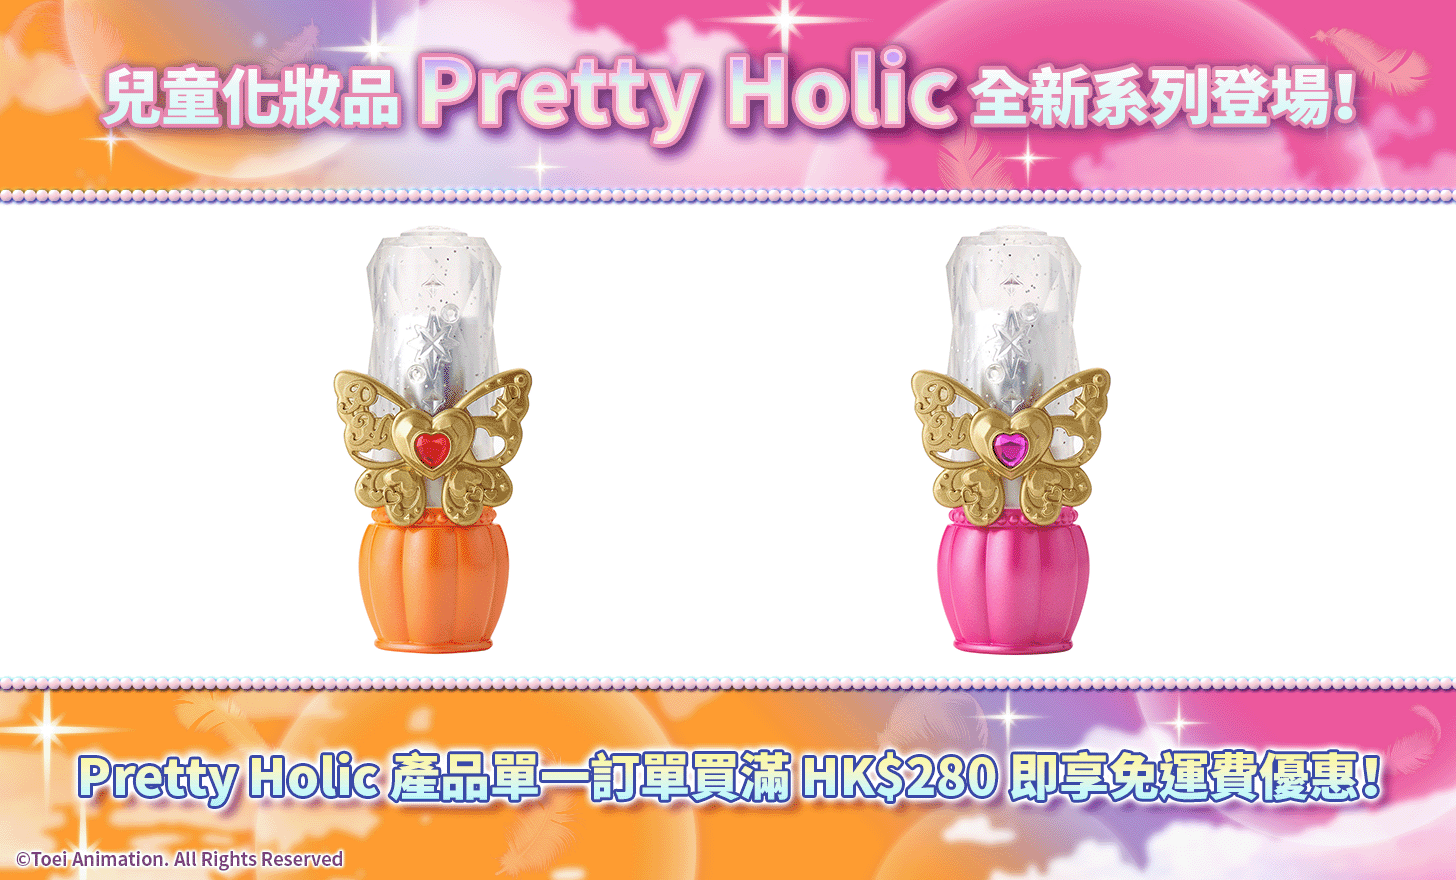 凡購買Pretty Holic系列產品 滿HK$280即享免運費